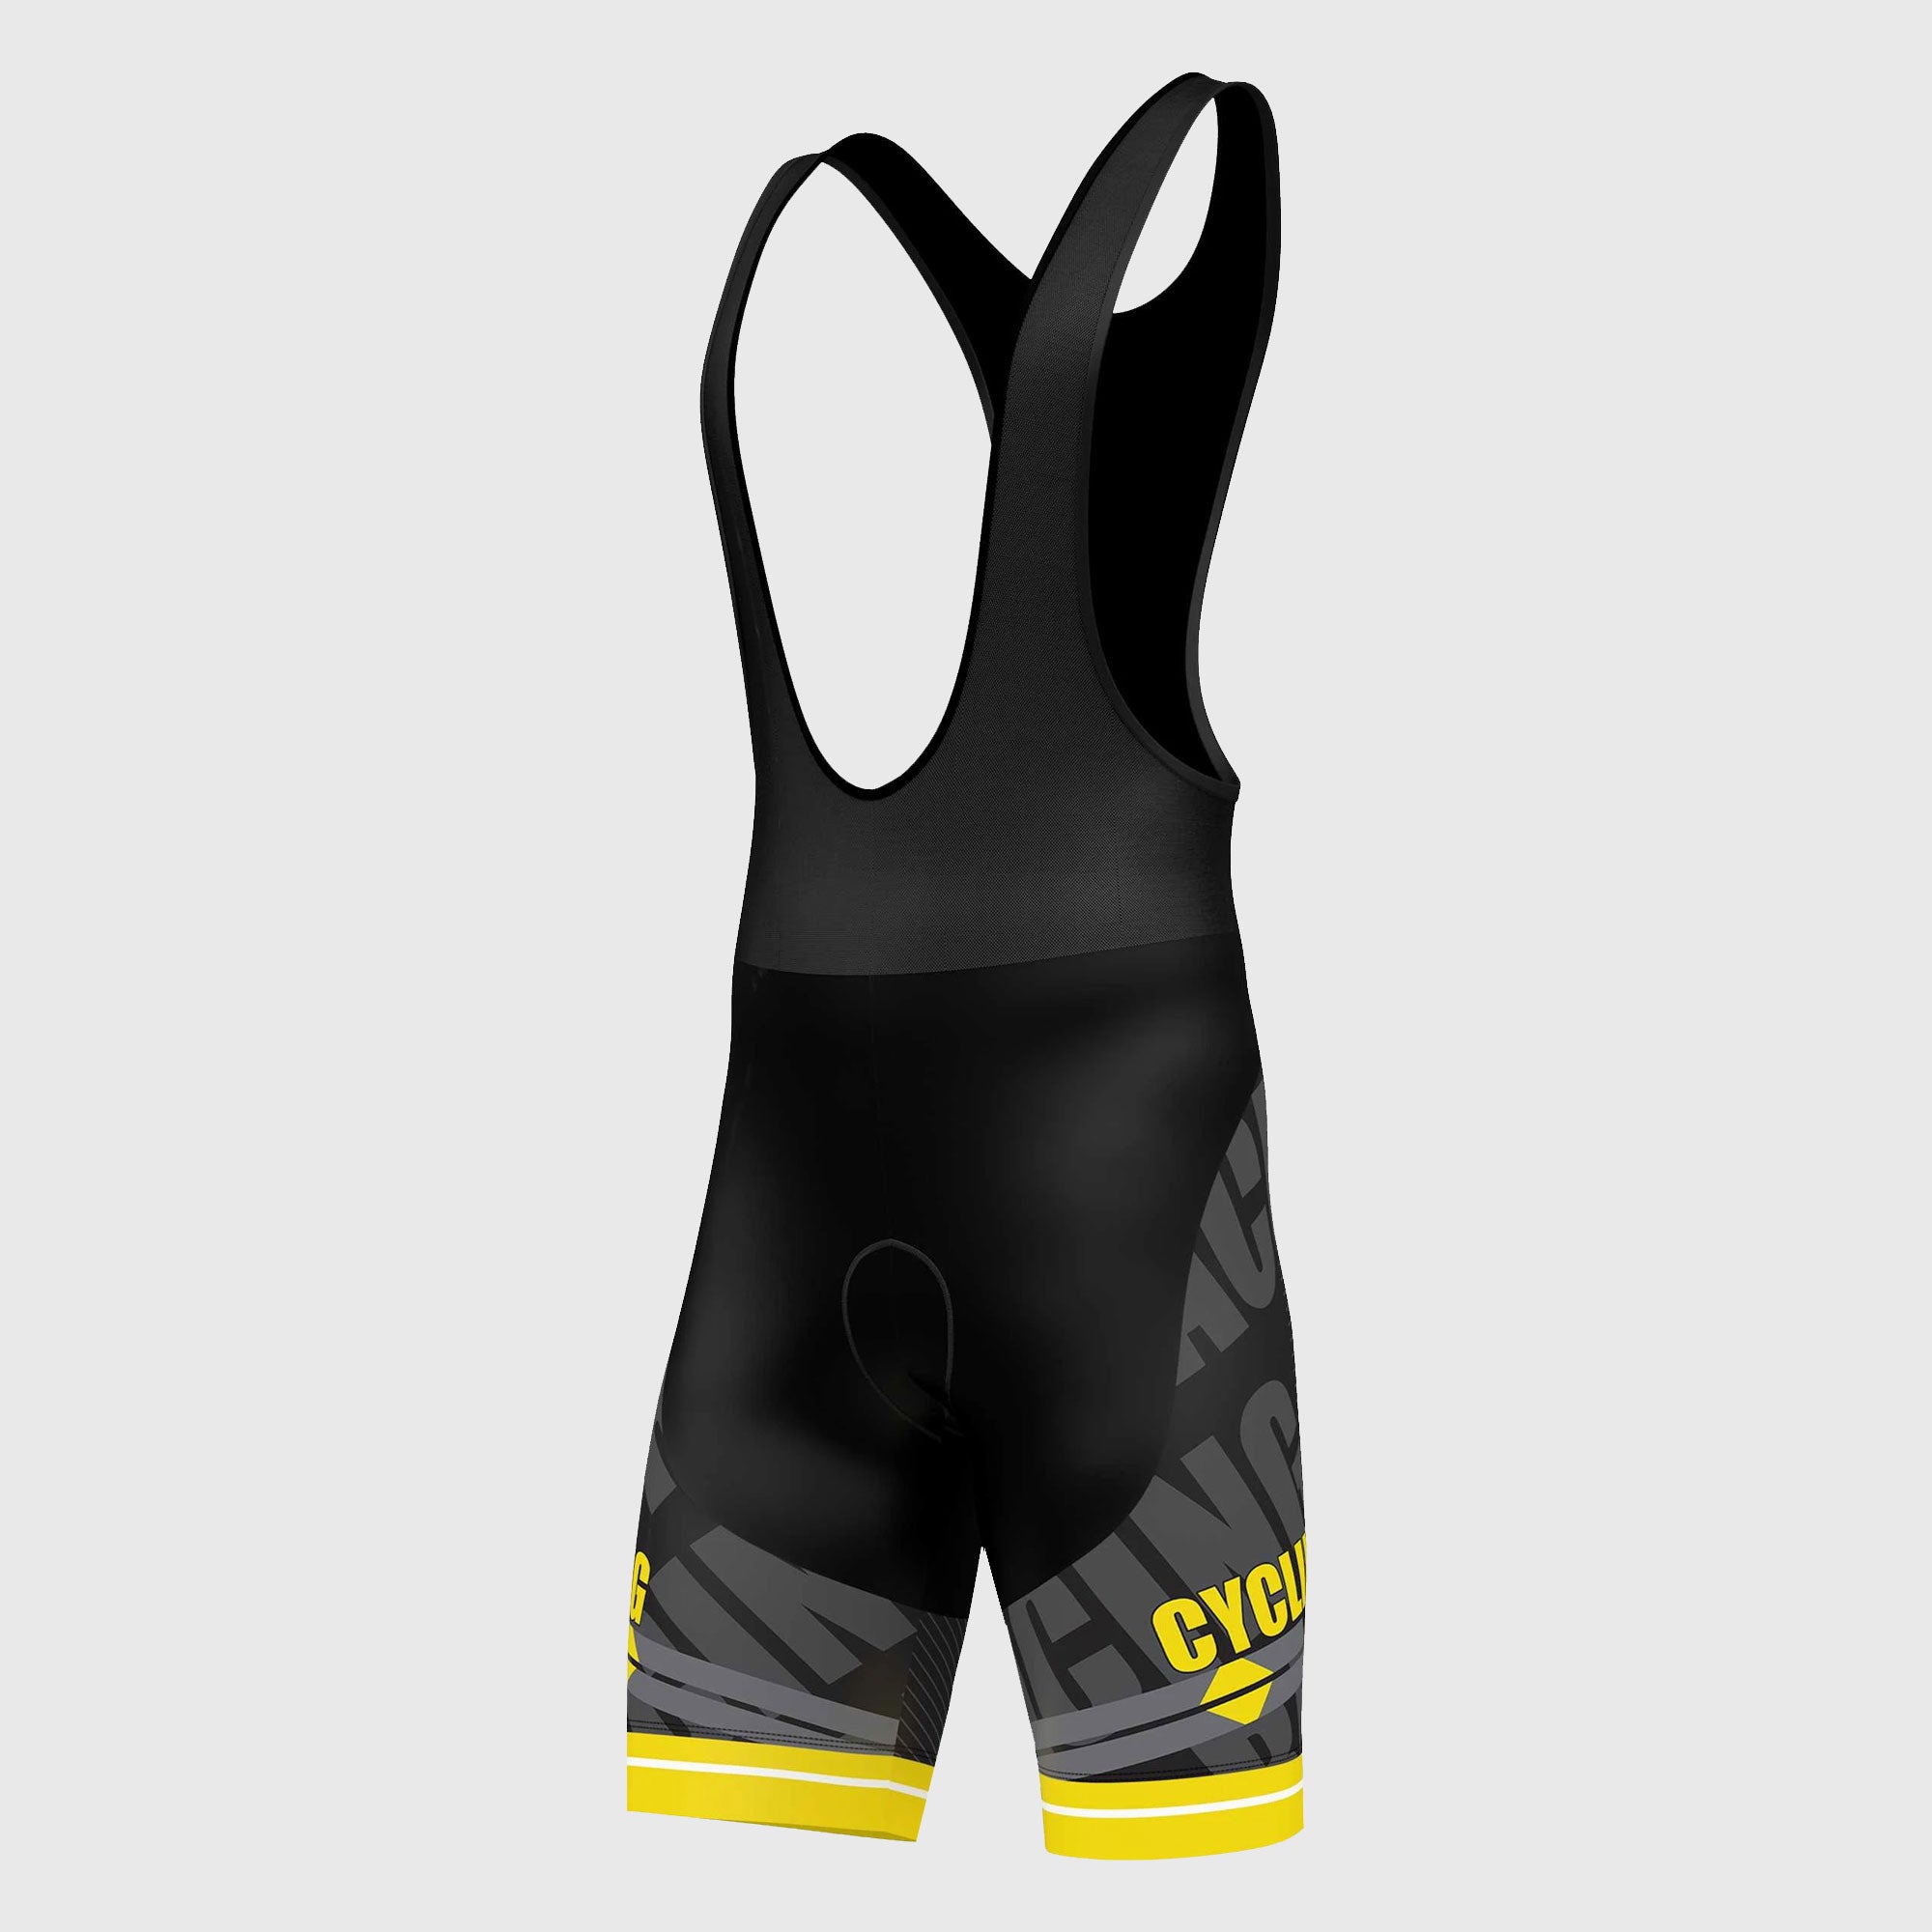 Fdx Core Yellow Men's Padded Summer Cycling Bib Shorts